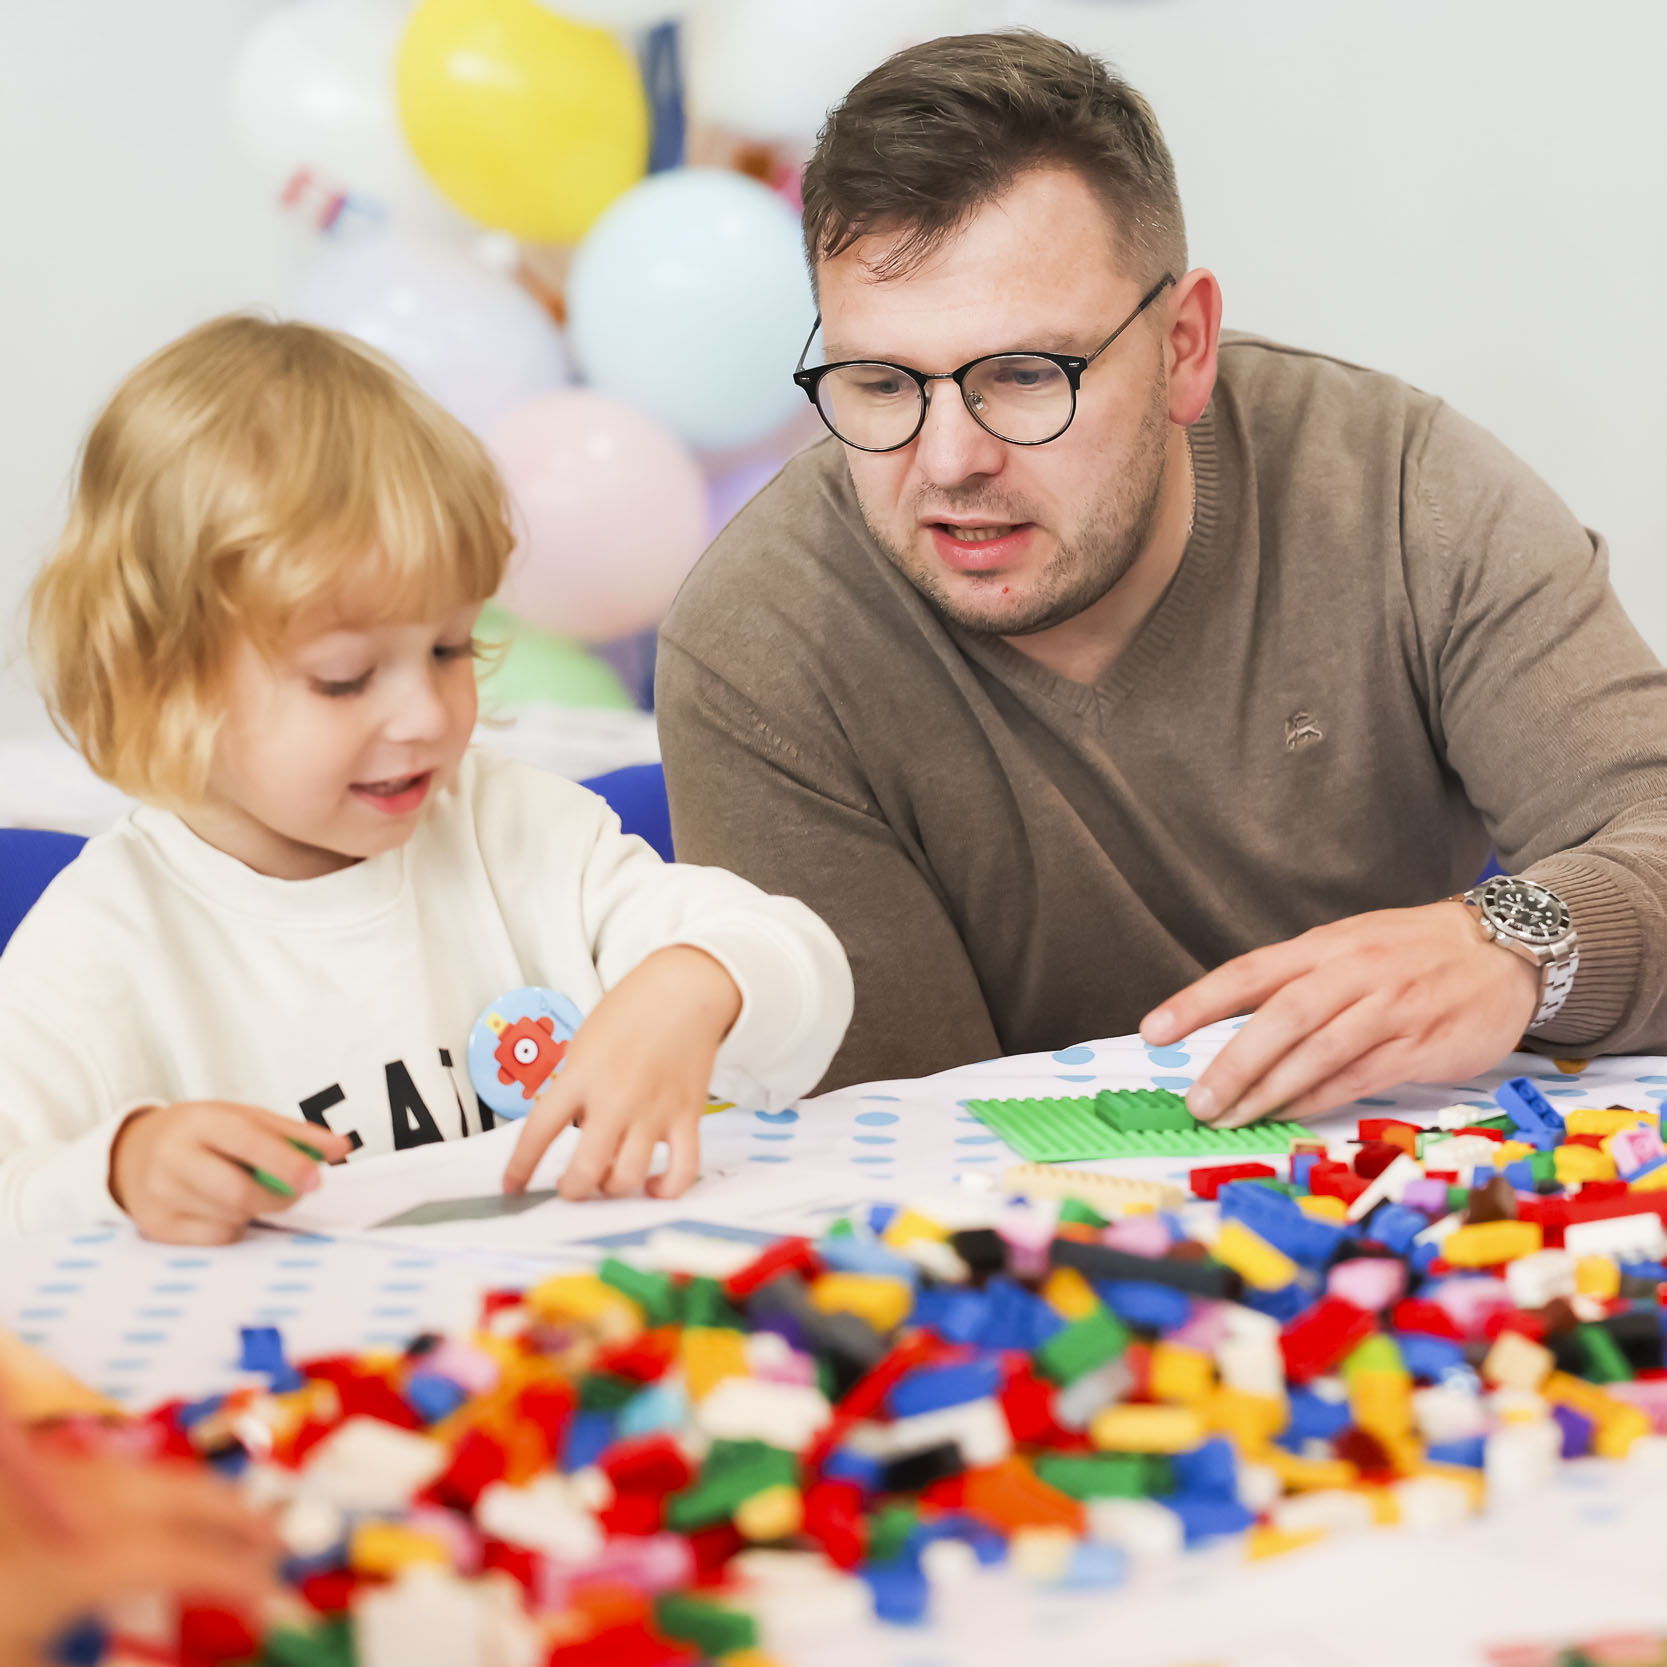 Dziecko i rodzic układający klocki lego w trakcie warsztatów